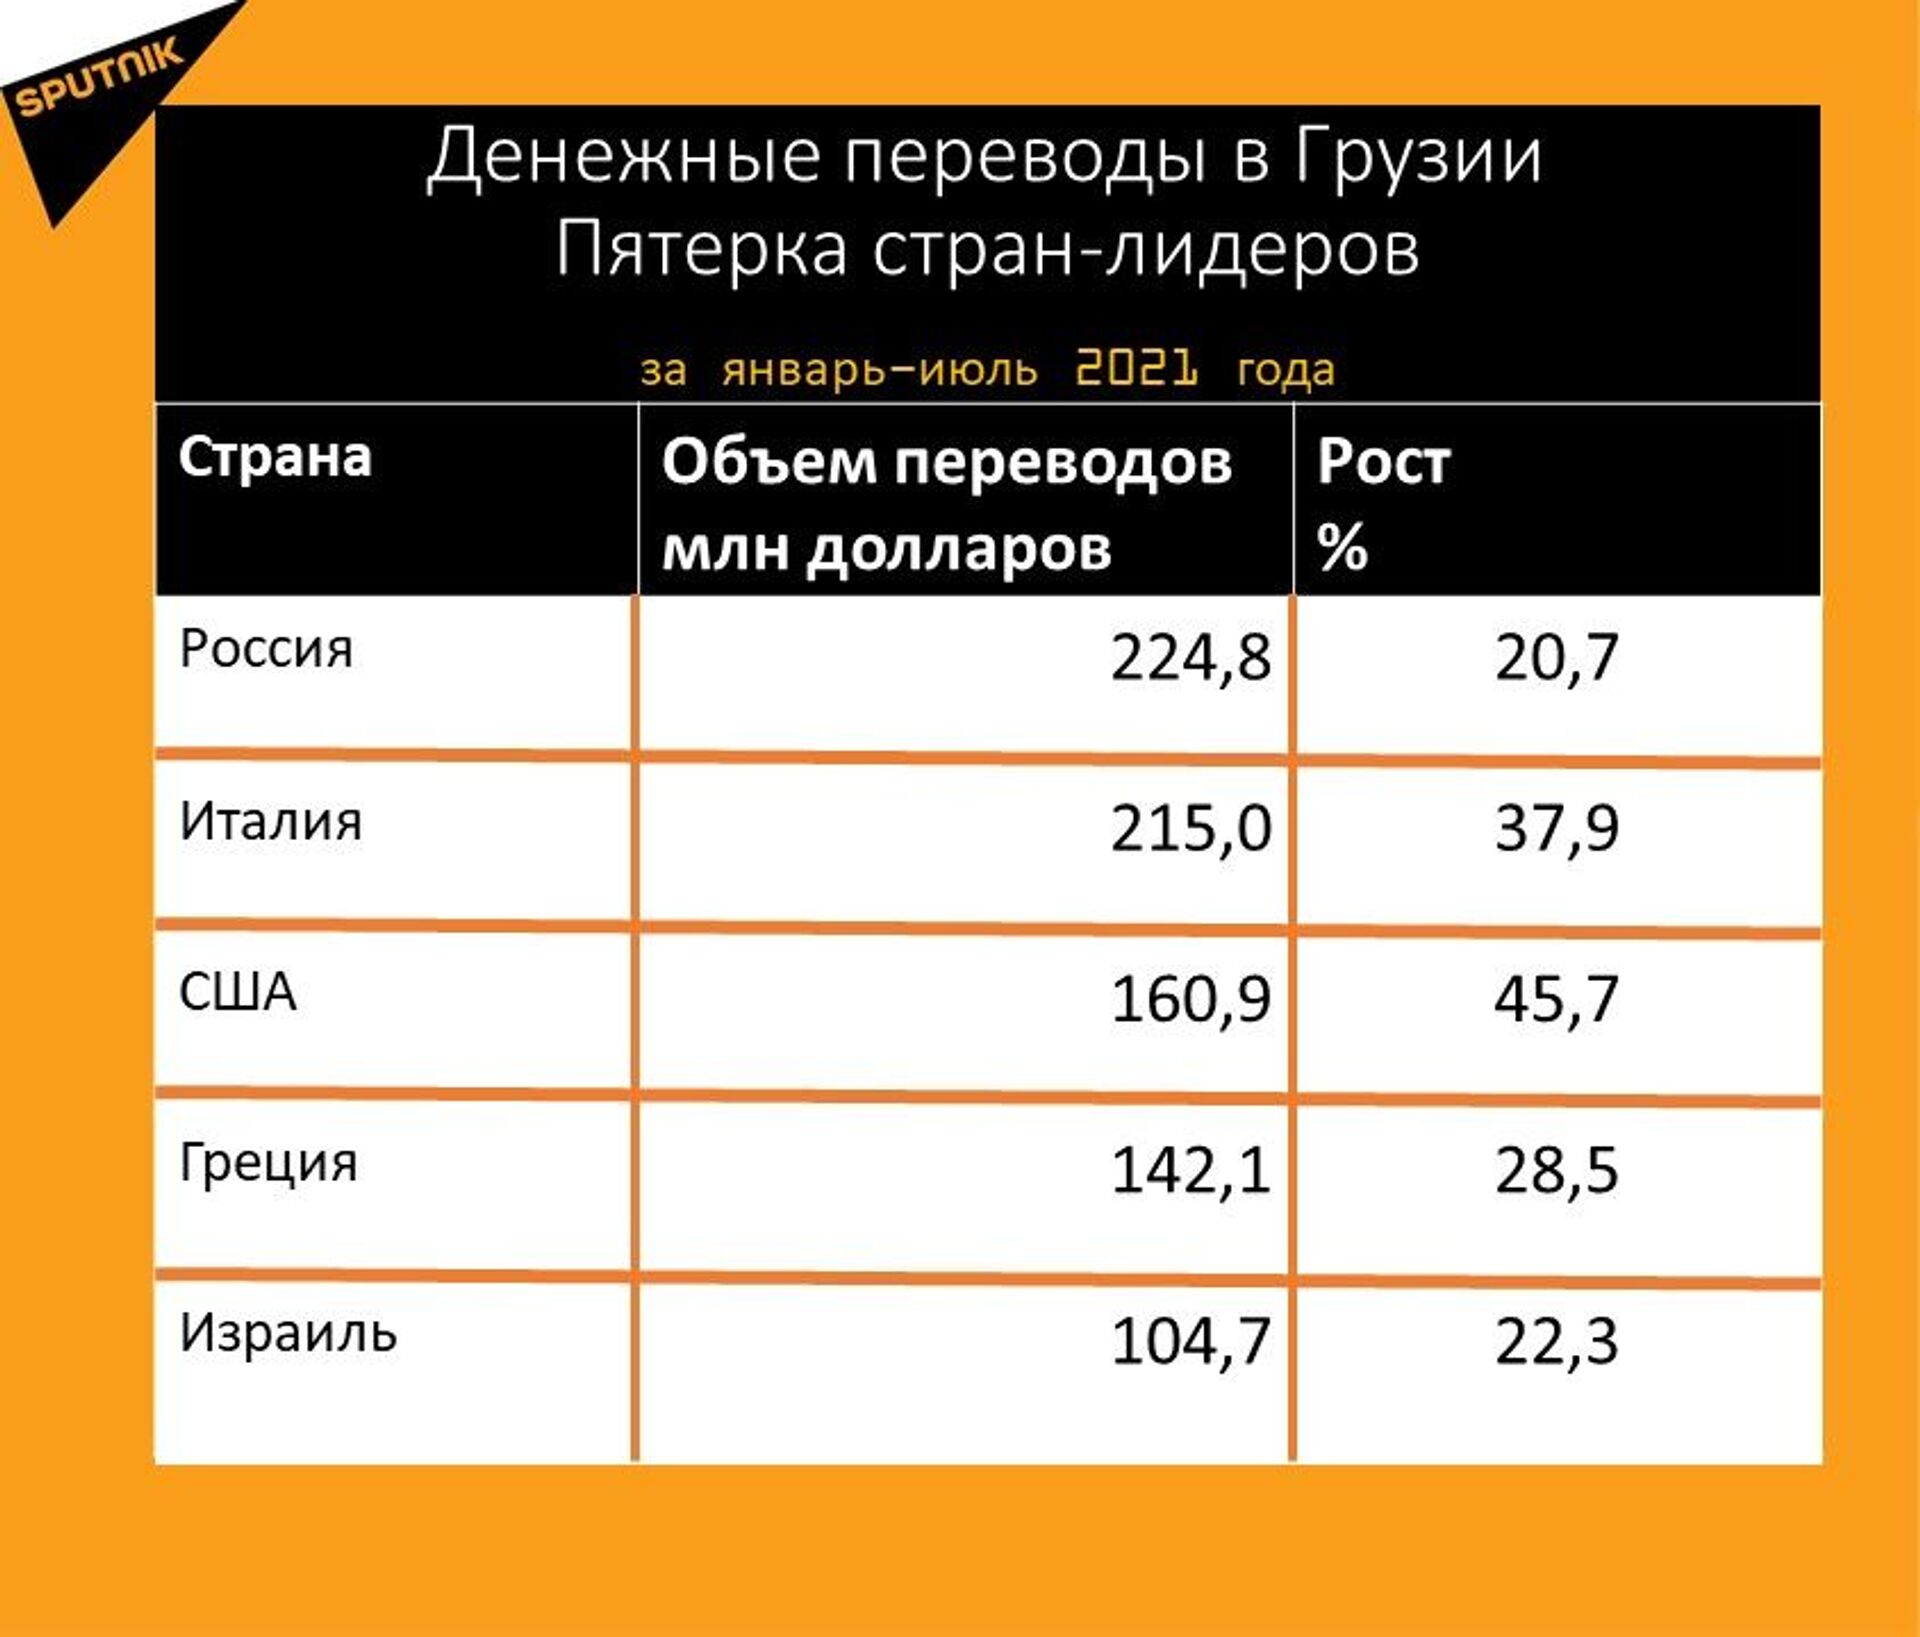 Статистика денежных переводов в Грузию за январь-июль 2021 года - Sputnik Грузия, 1920, 24.08.2021